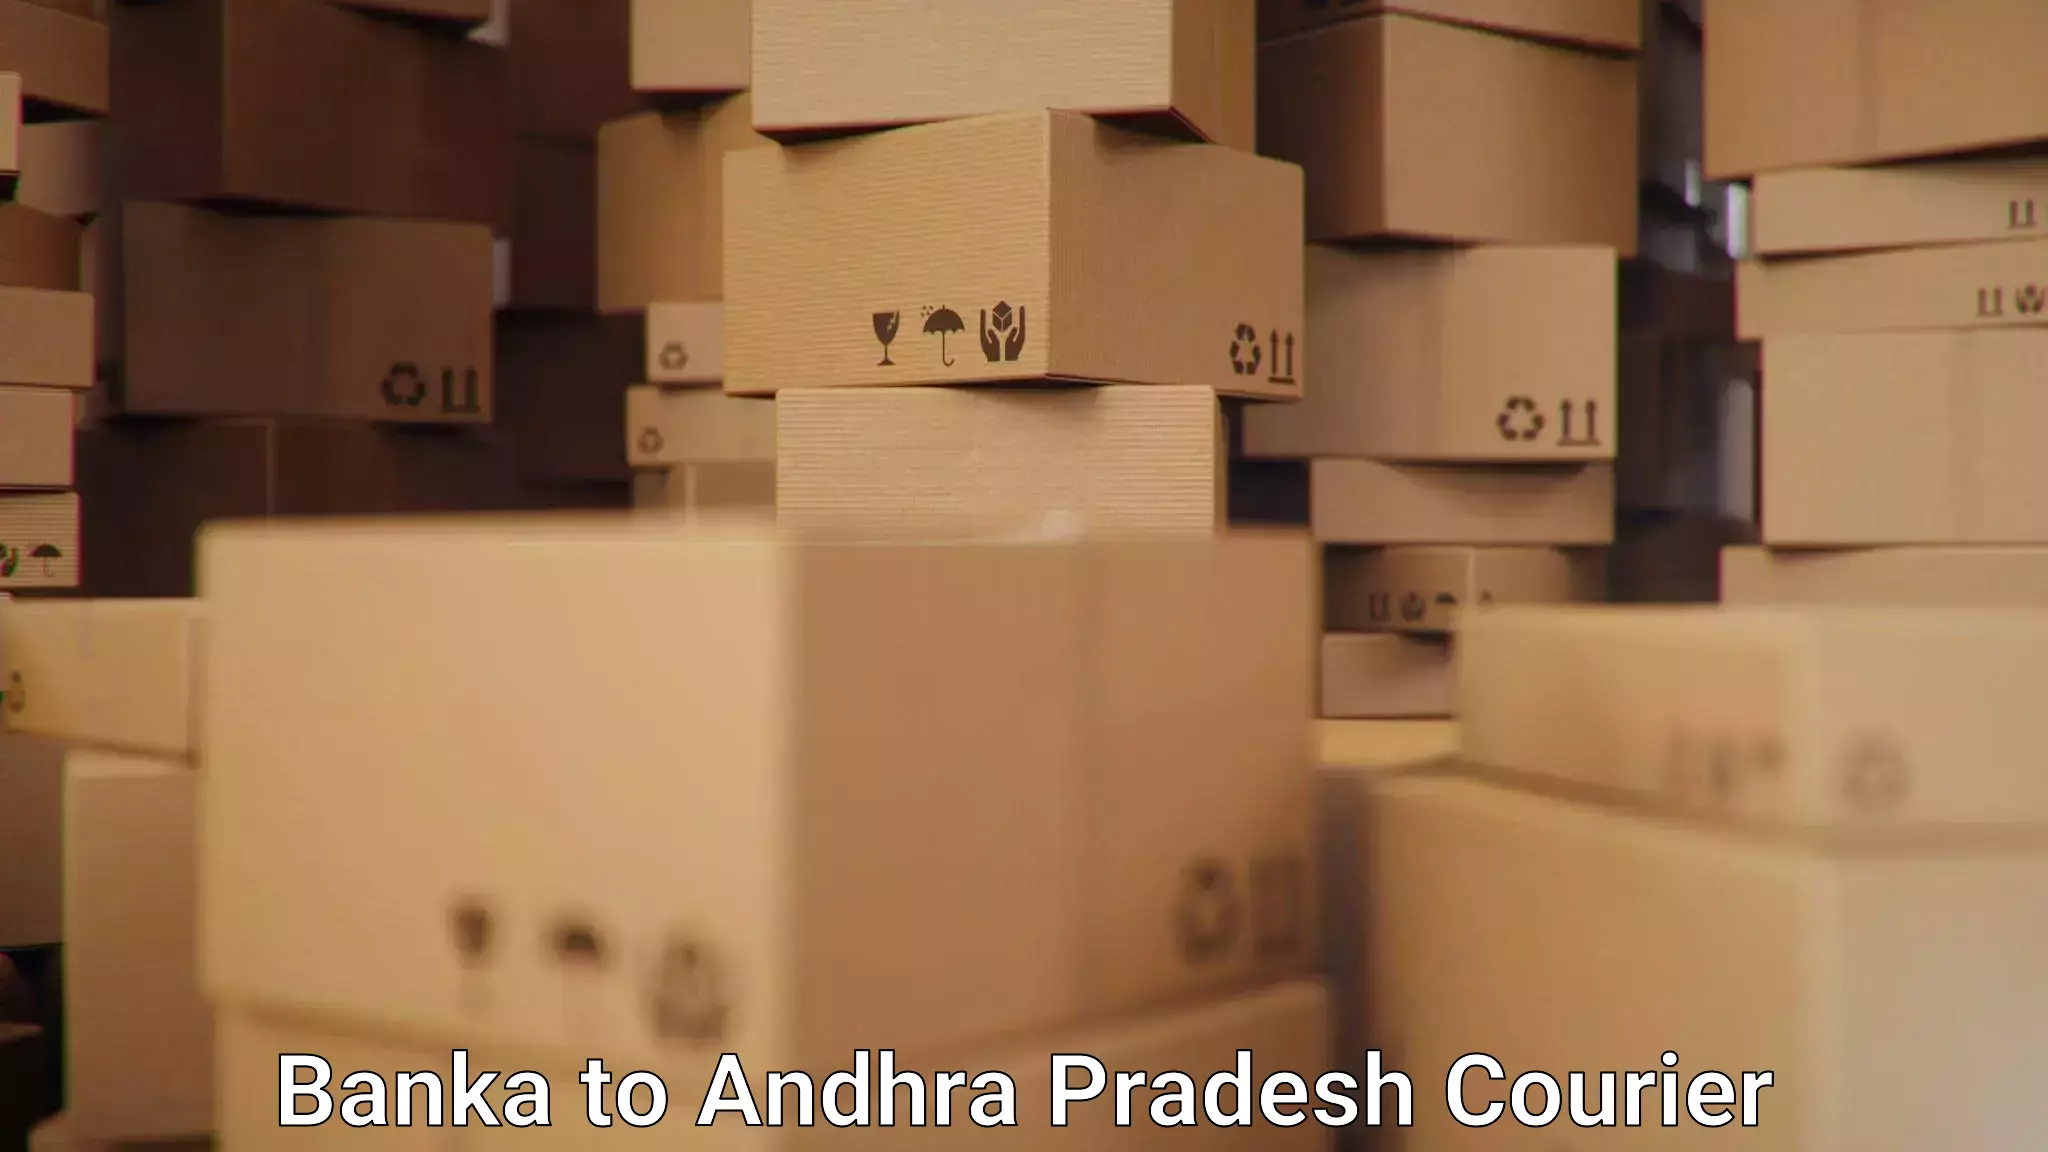 Nationwide shipping capabilities Banka to Andhra Pradesh